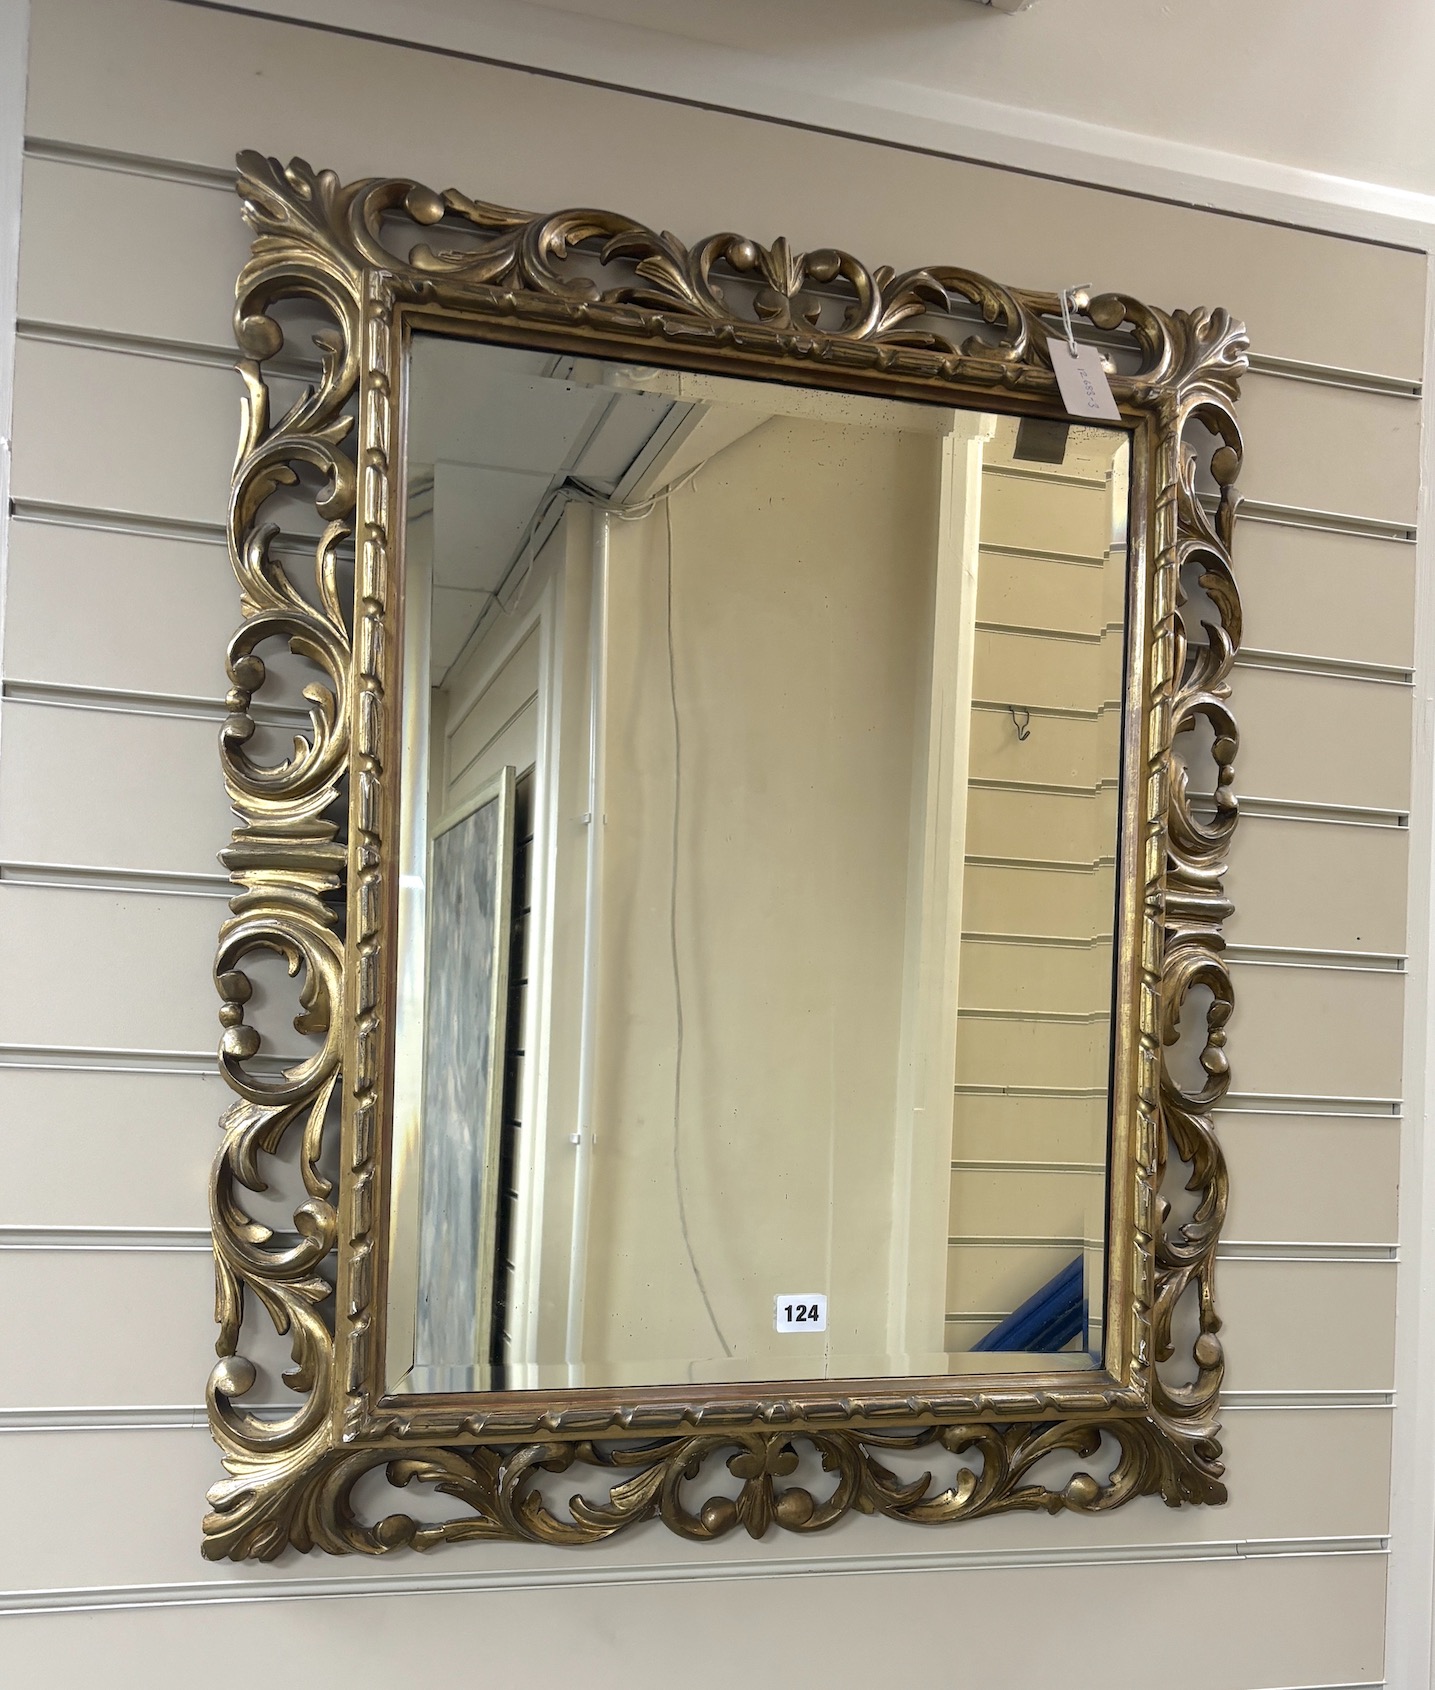 A bevelled gilt mirror, width 65cm, height 80cm